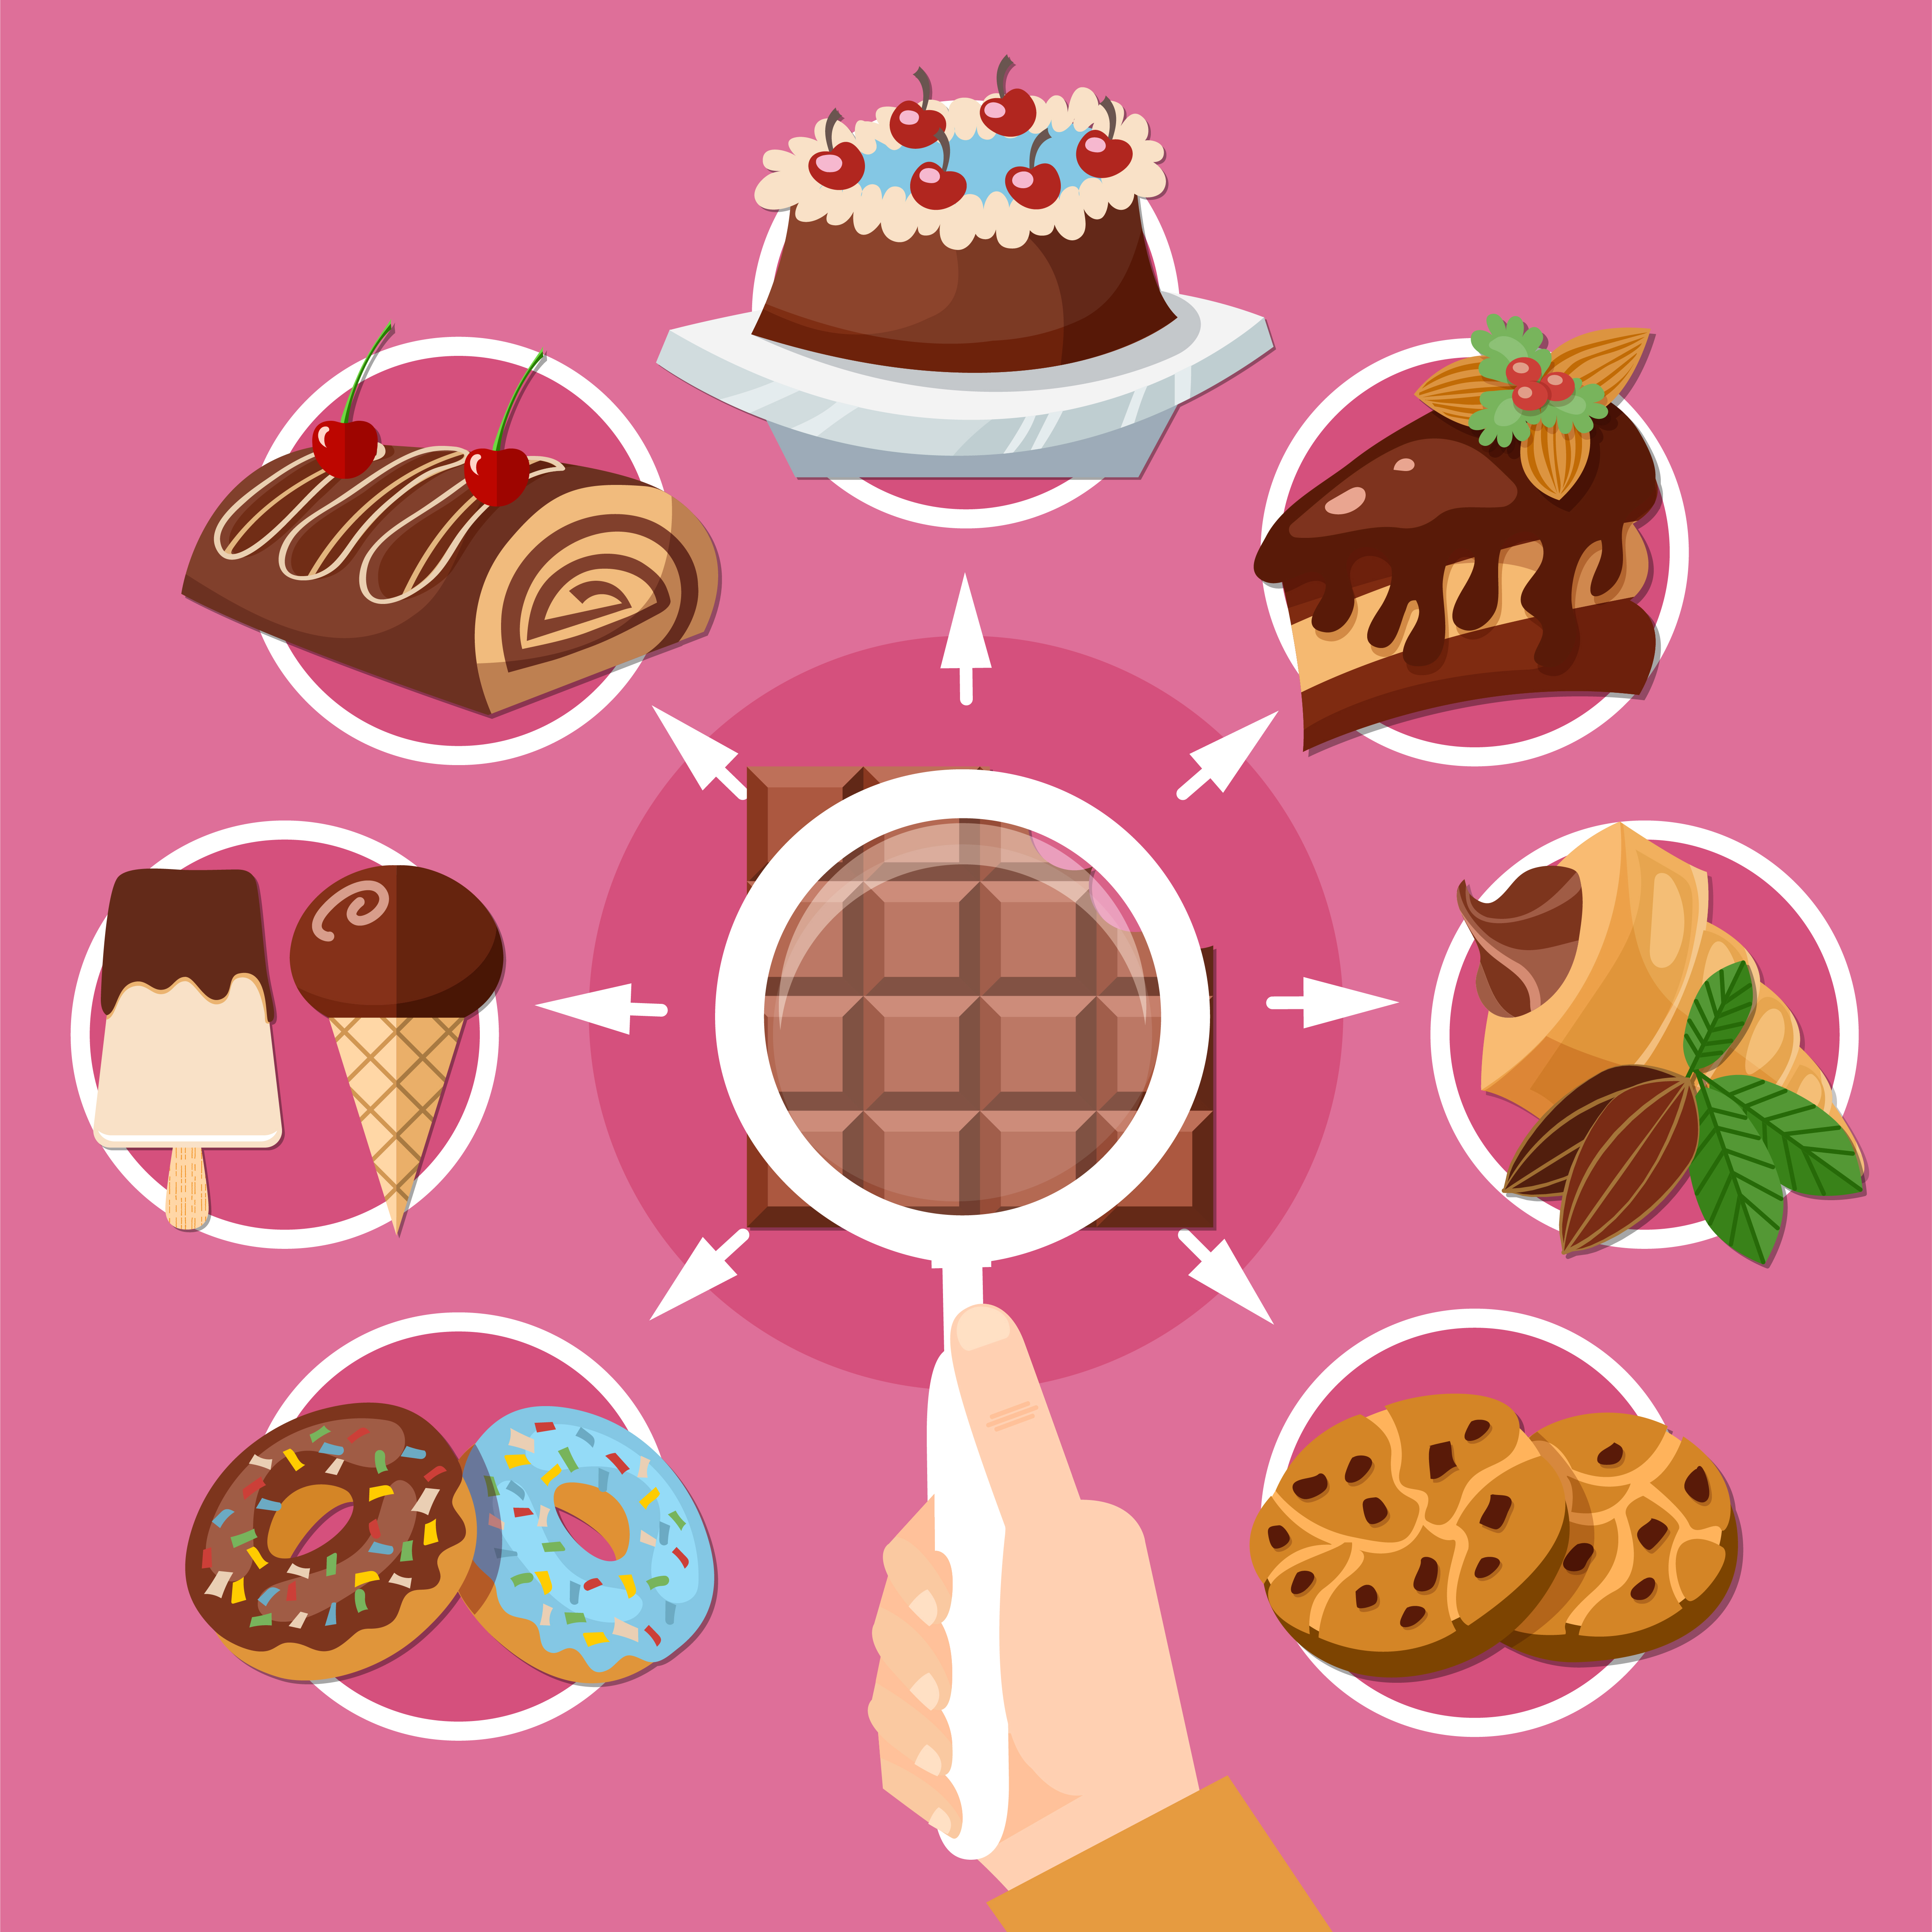 La e-distribution multi modal illustrée par le chocolat